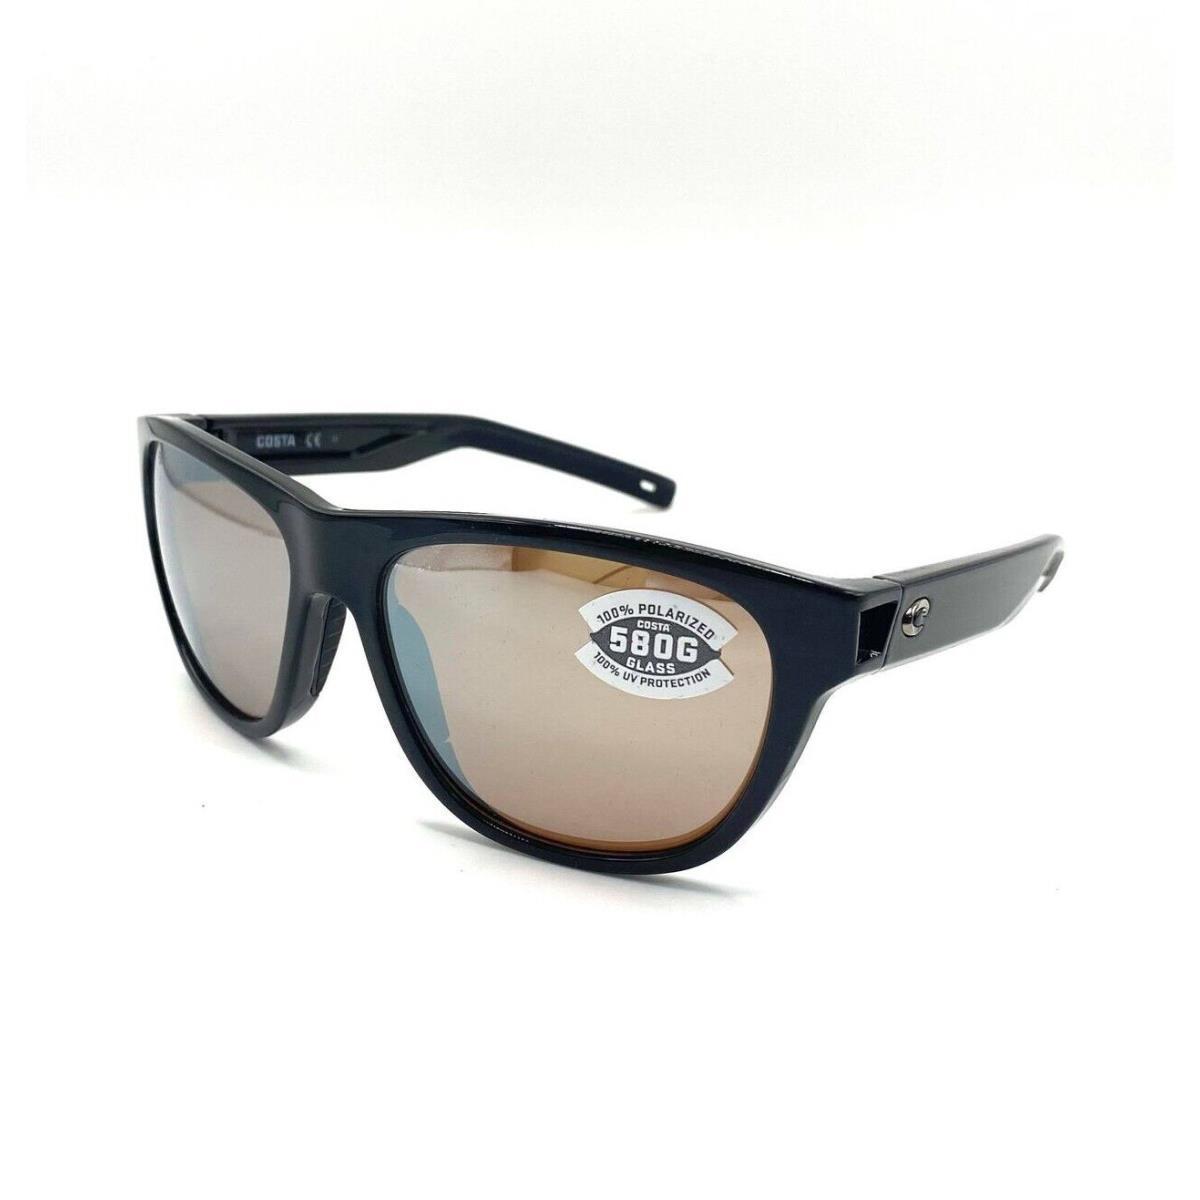 Costa Bayside 580P Polarized Sunglasses - Shiny Black/Copper